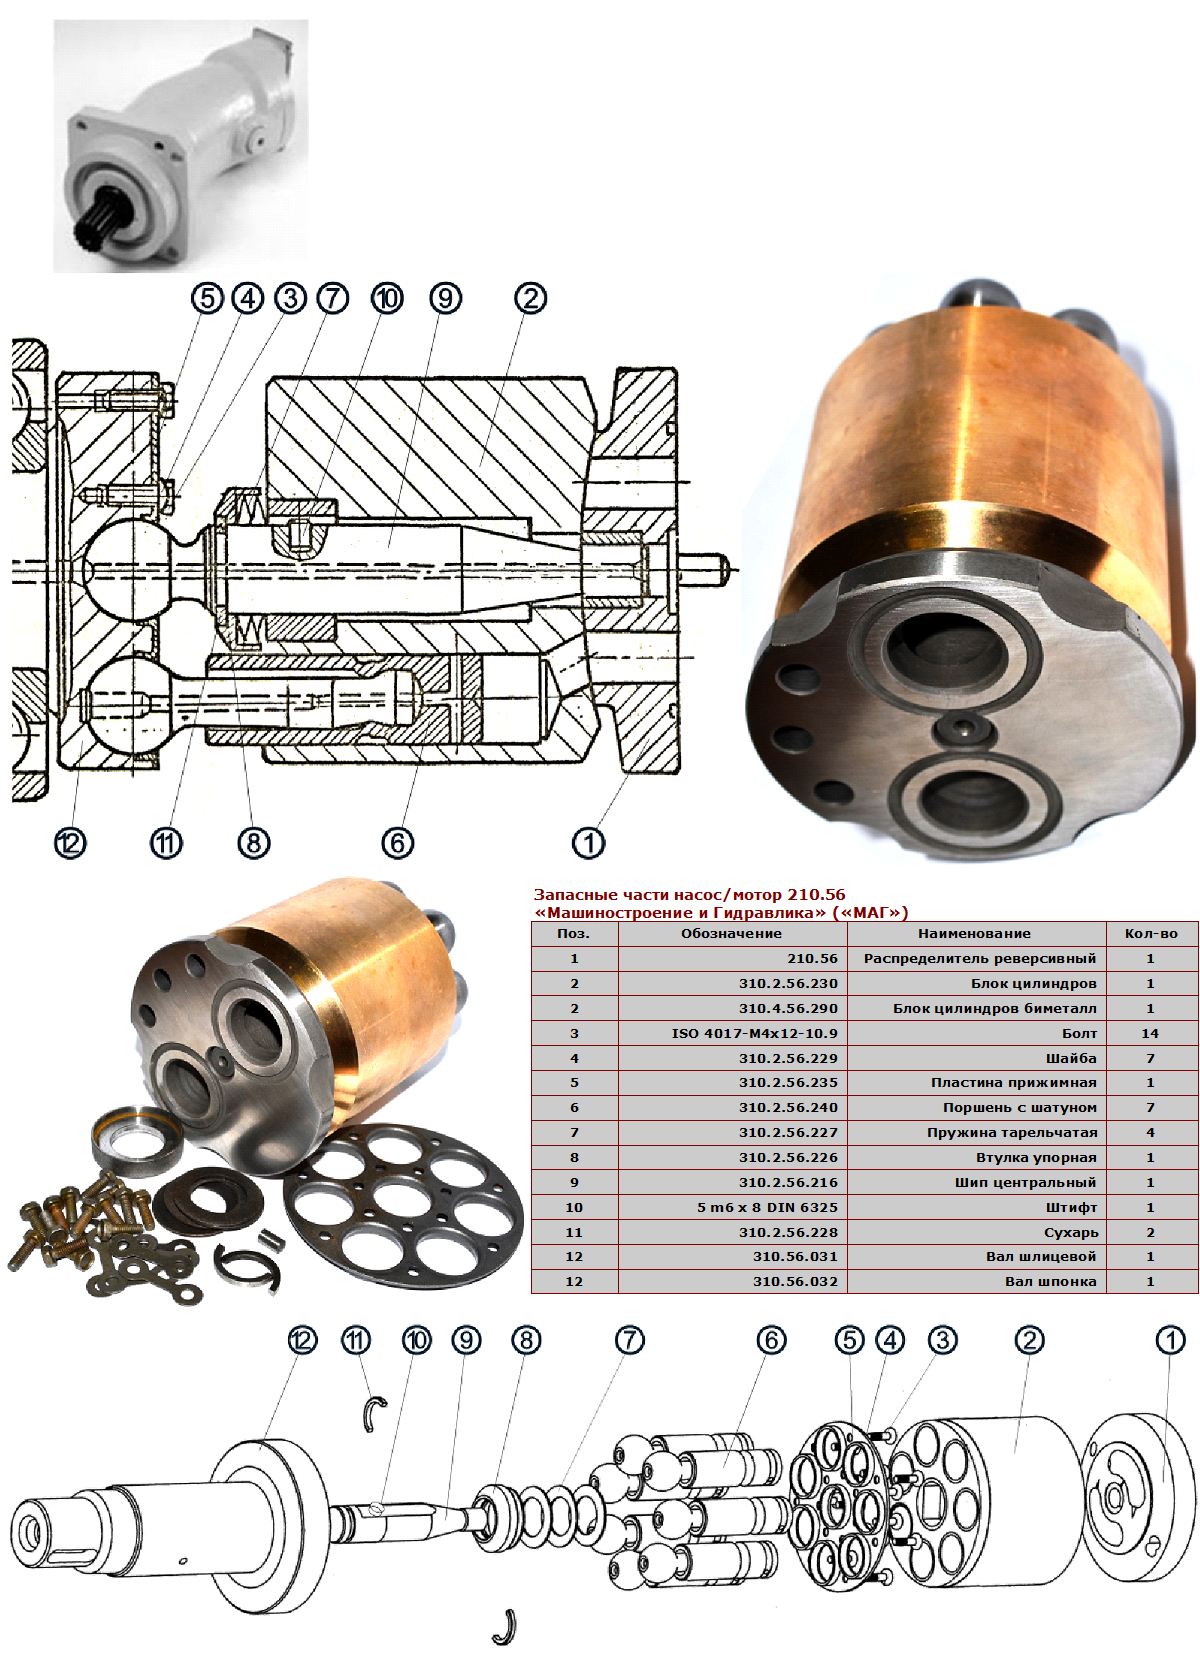 Запасные части насос/мотор 210.56 «Машиностроение и Гидравлика» («МАГ»)
